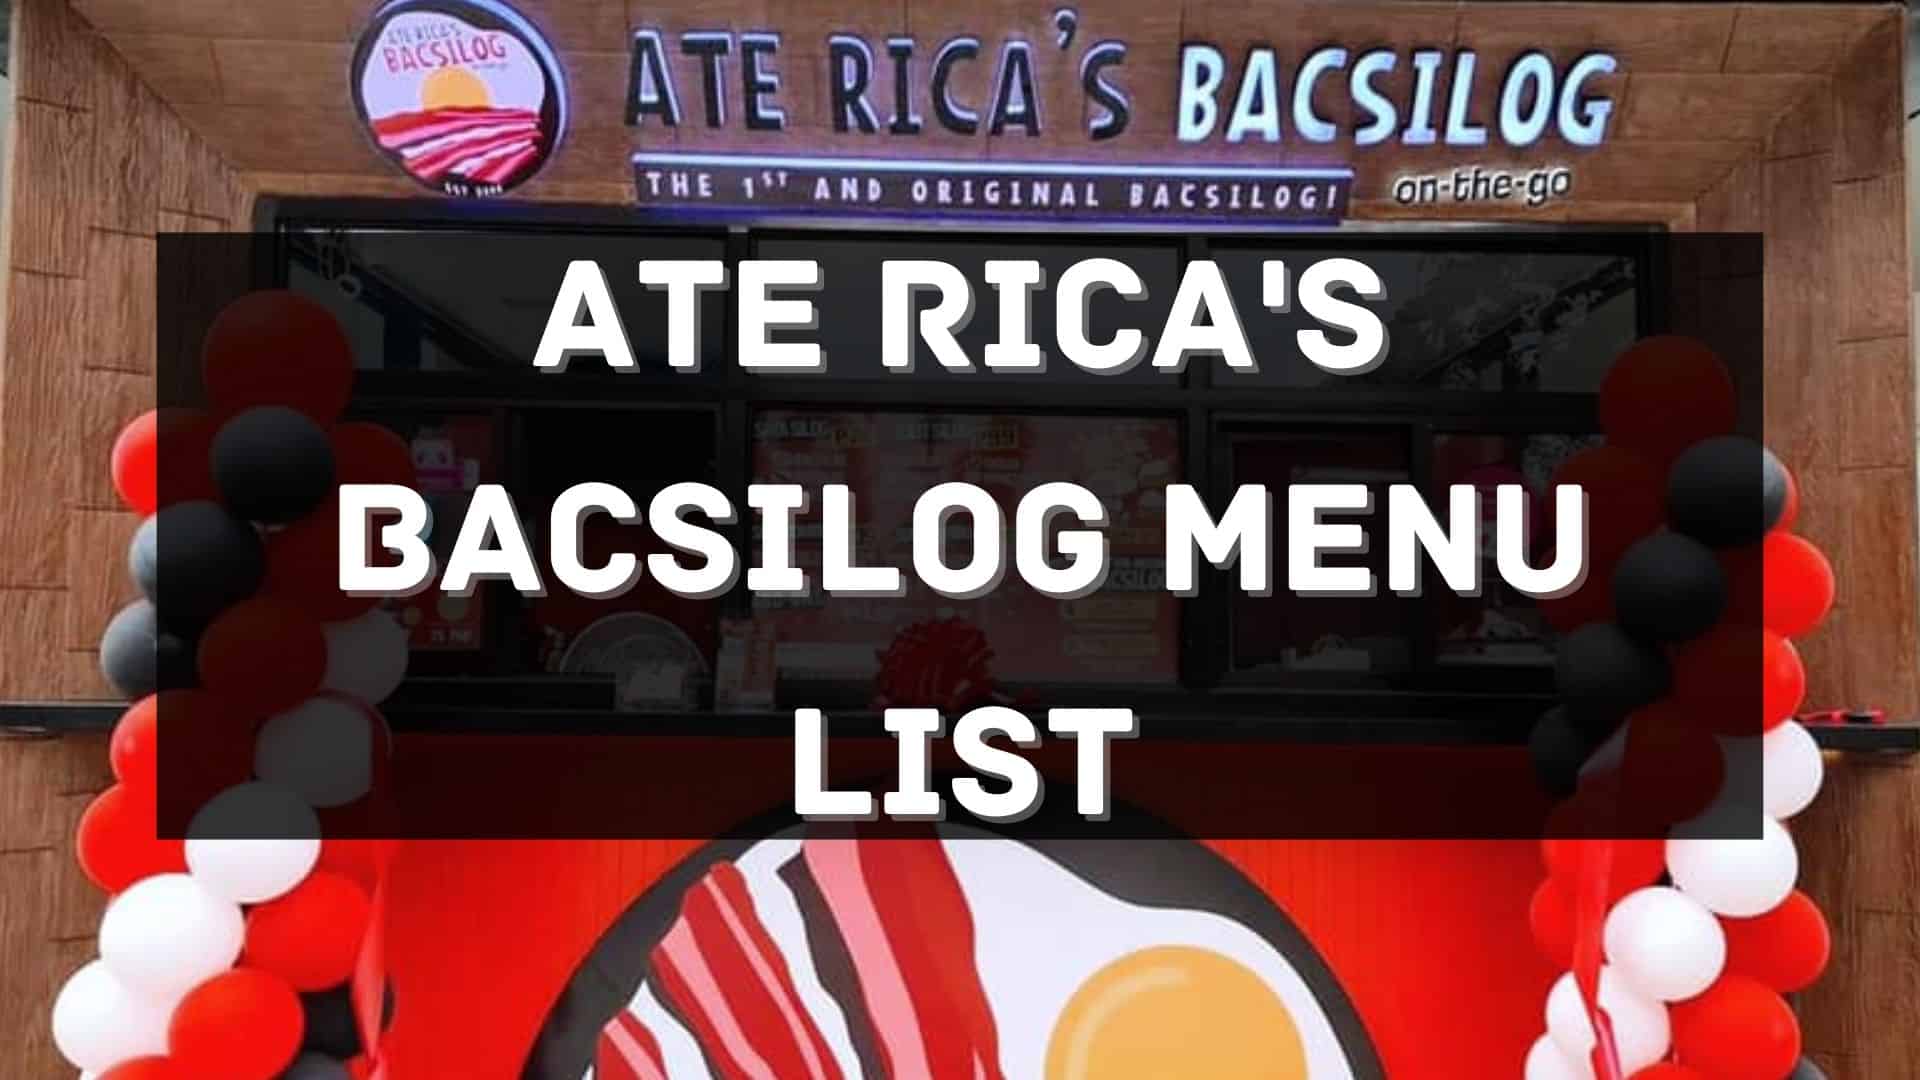 ate rica's bacsilog menu prices philippines